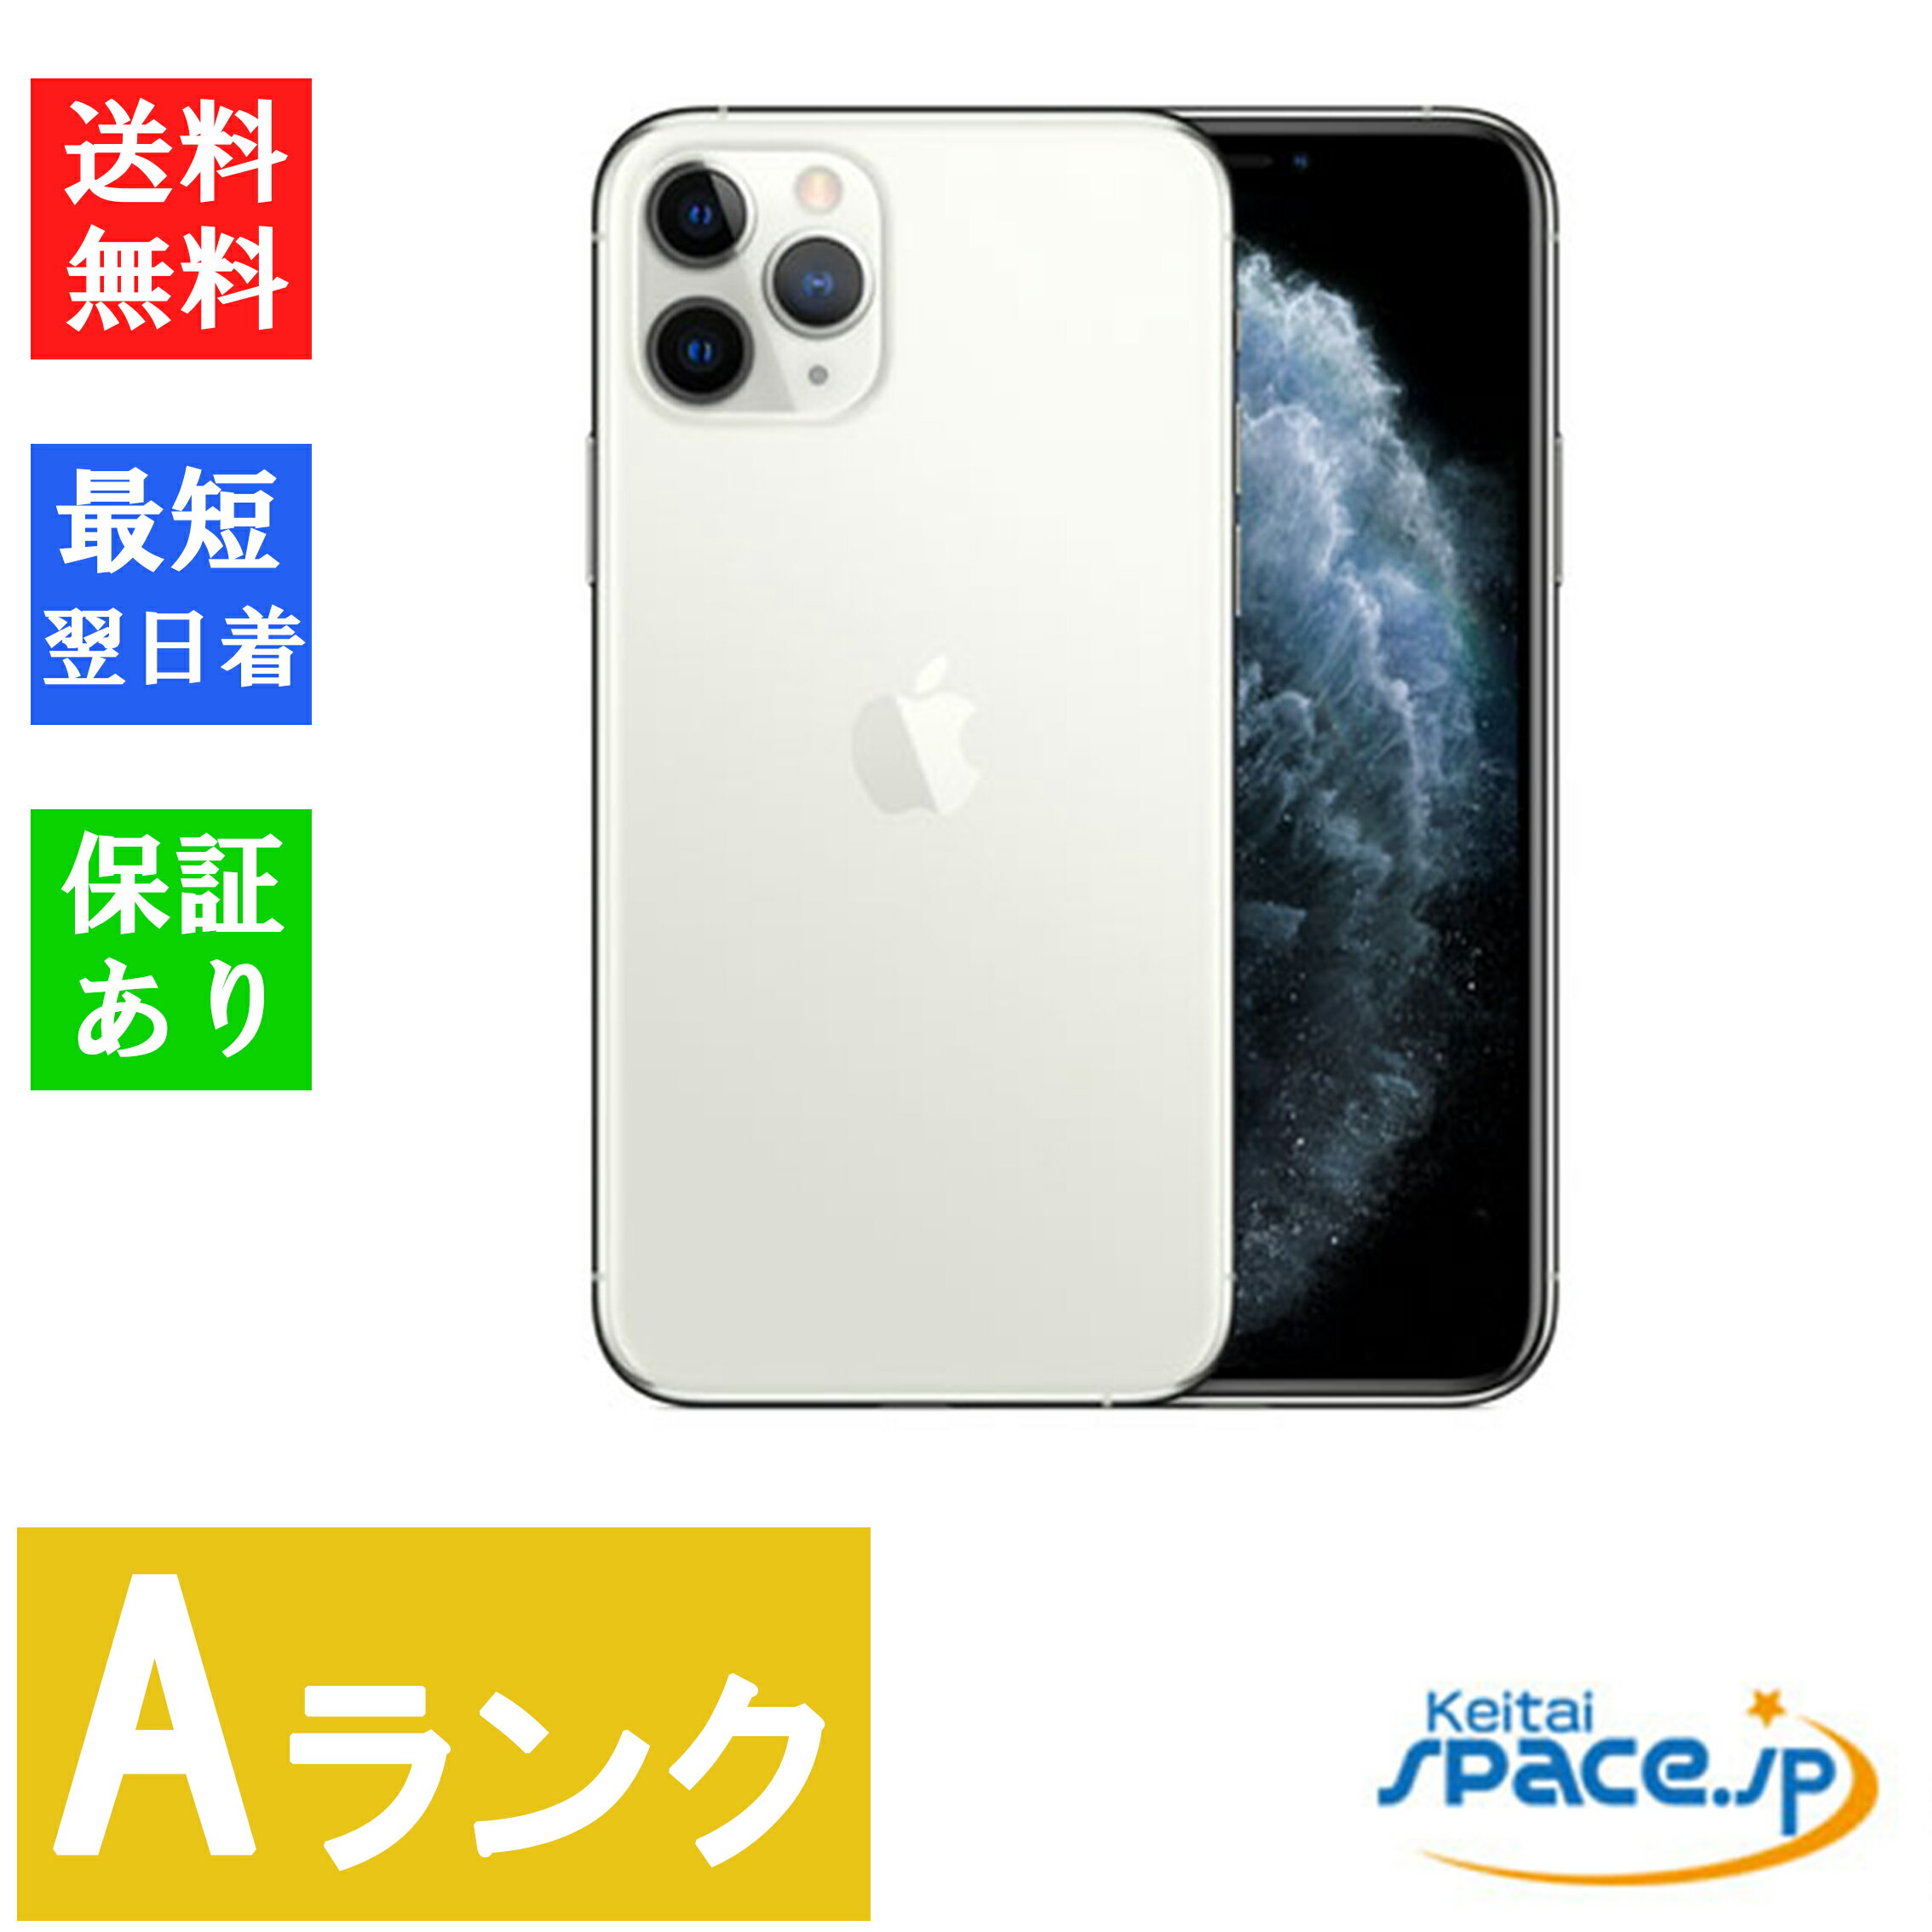 美品 Aランク SIMフリー iPhone 11 Pro 256GB Silver シルバー 